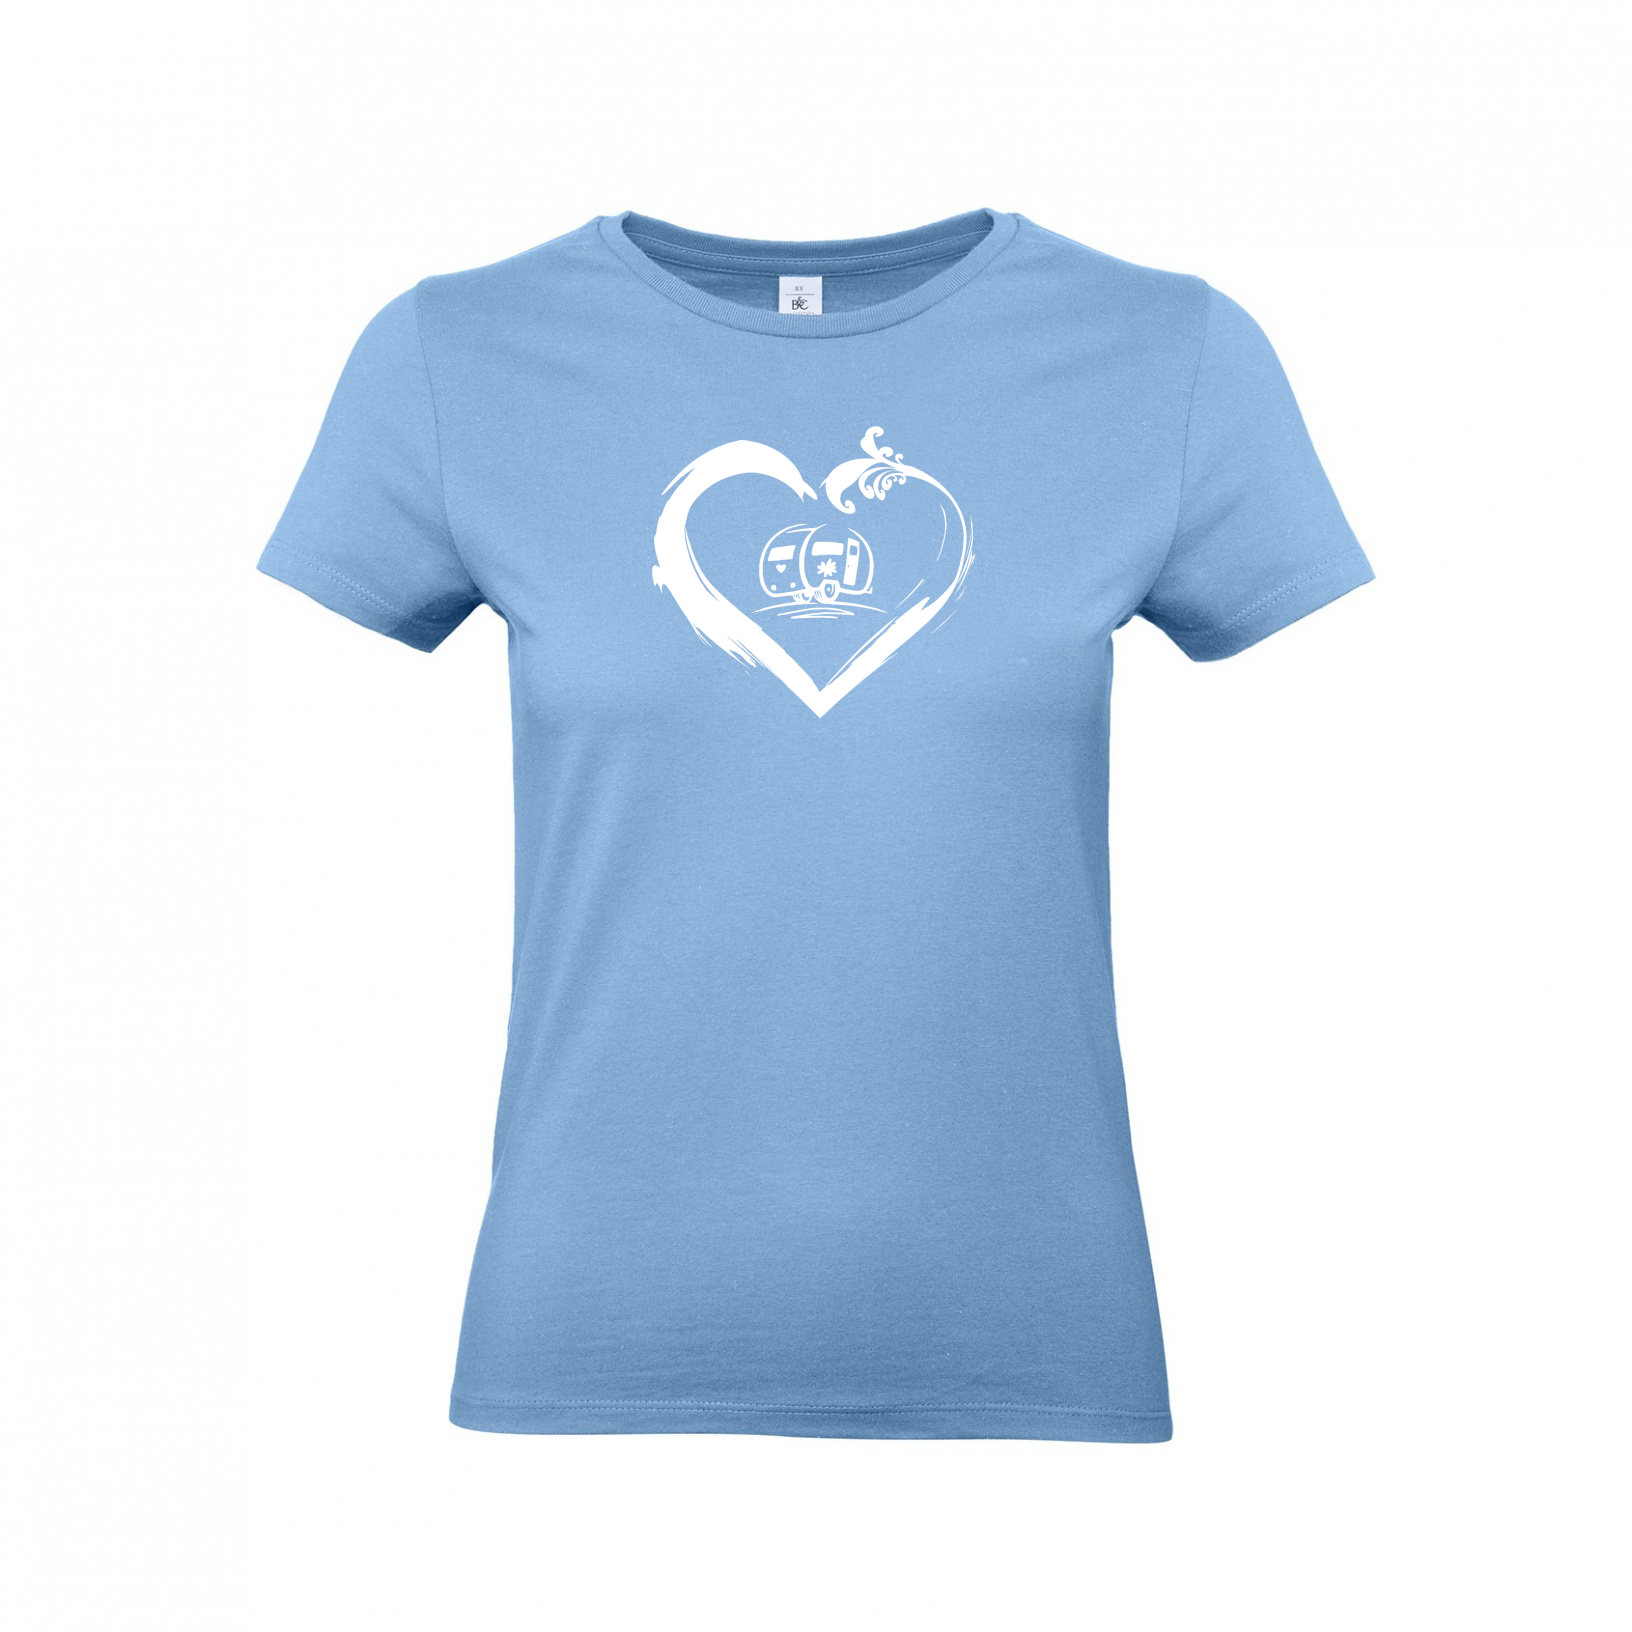 Wohnwagen Camperin mit Herz - Camping T-Shirt für Frauen